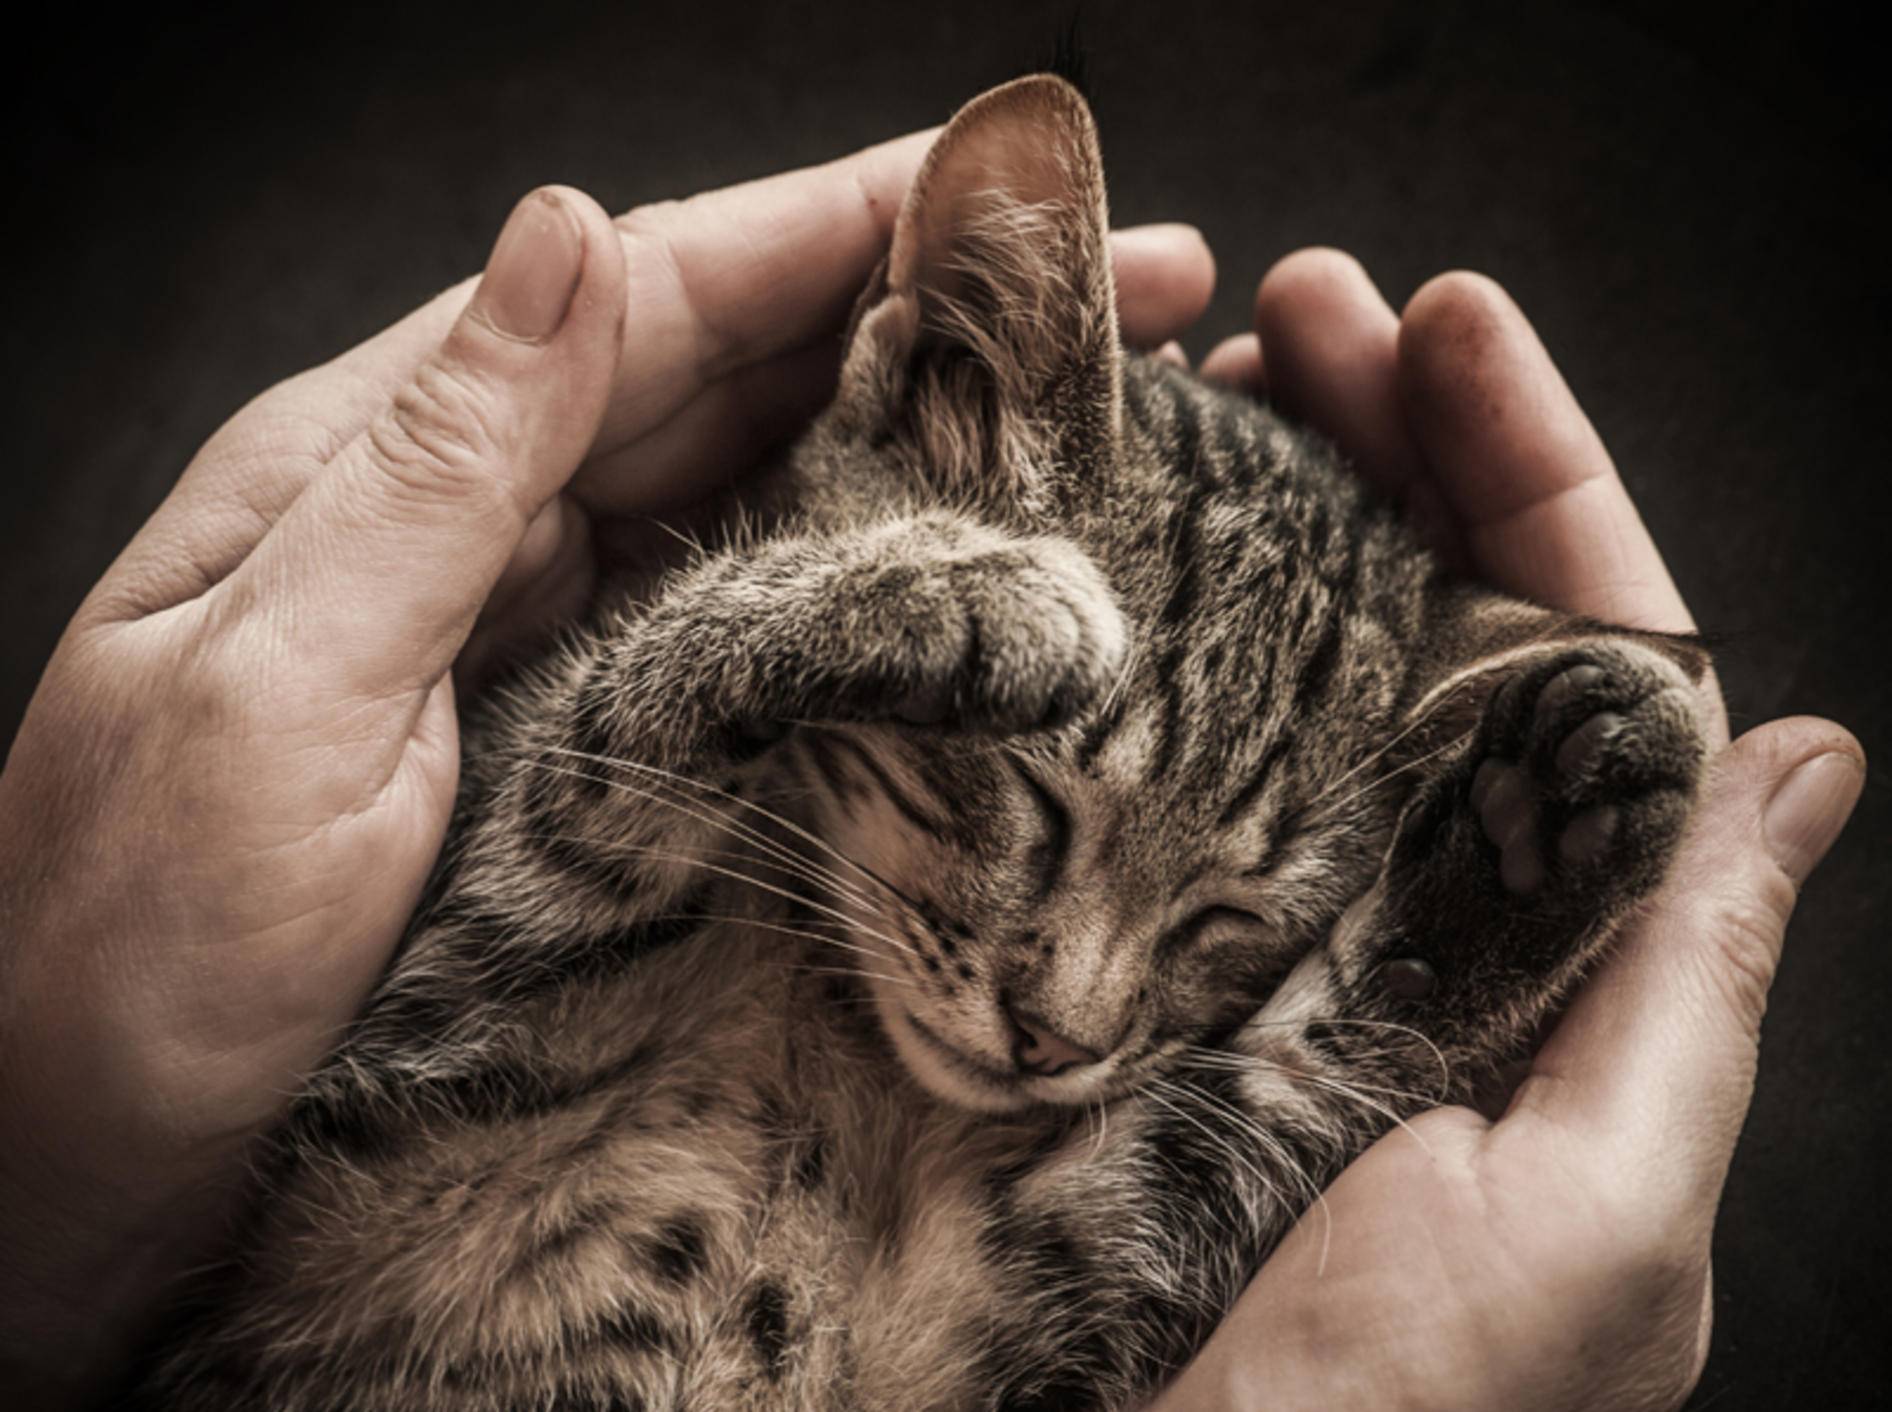 Erinnert sich die kleine Katze später an die schützenden Hände ihres Menschen? – Shutterstock / Vinogradov Illya